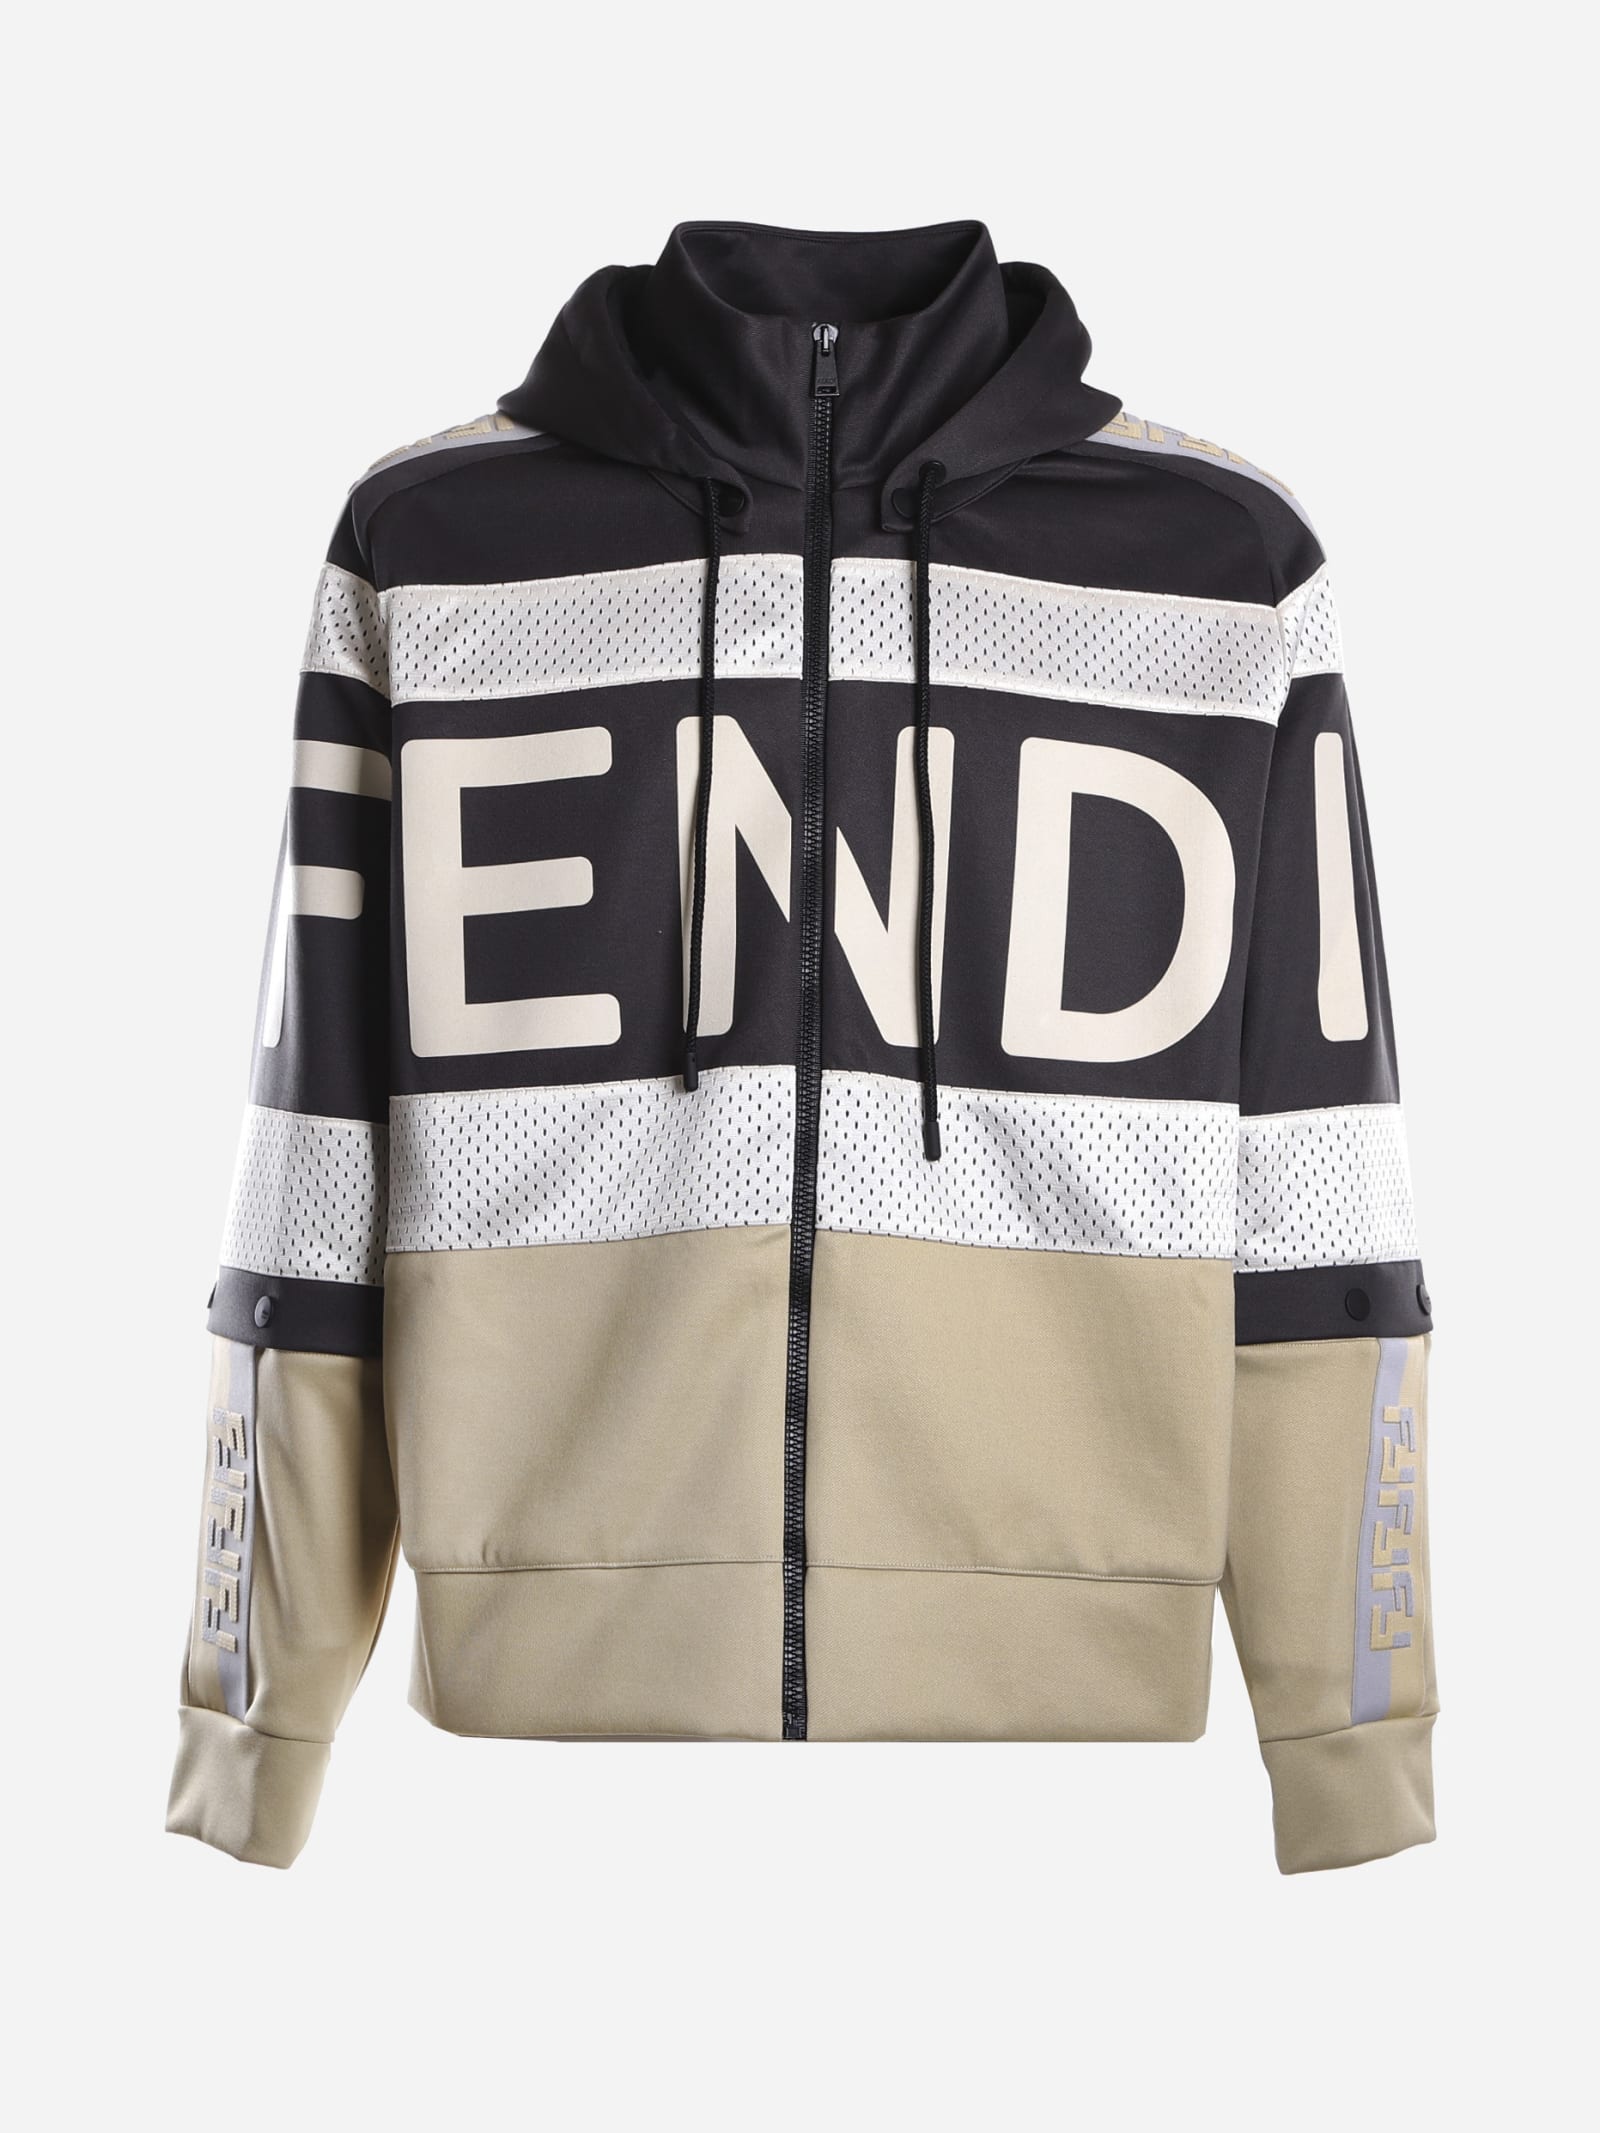 Fendi Cotton Blend Sweatshirt With Mesh Inserts In Black, Beige